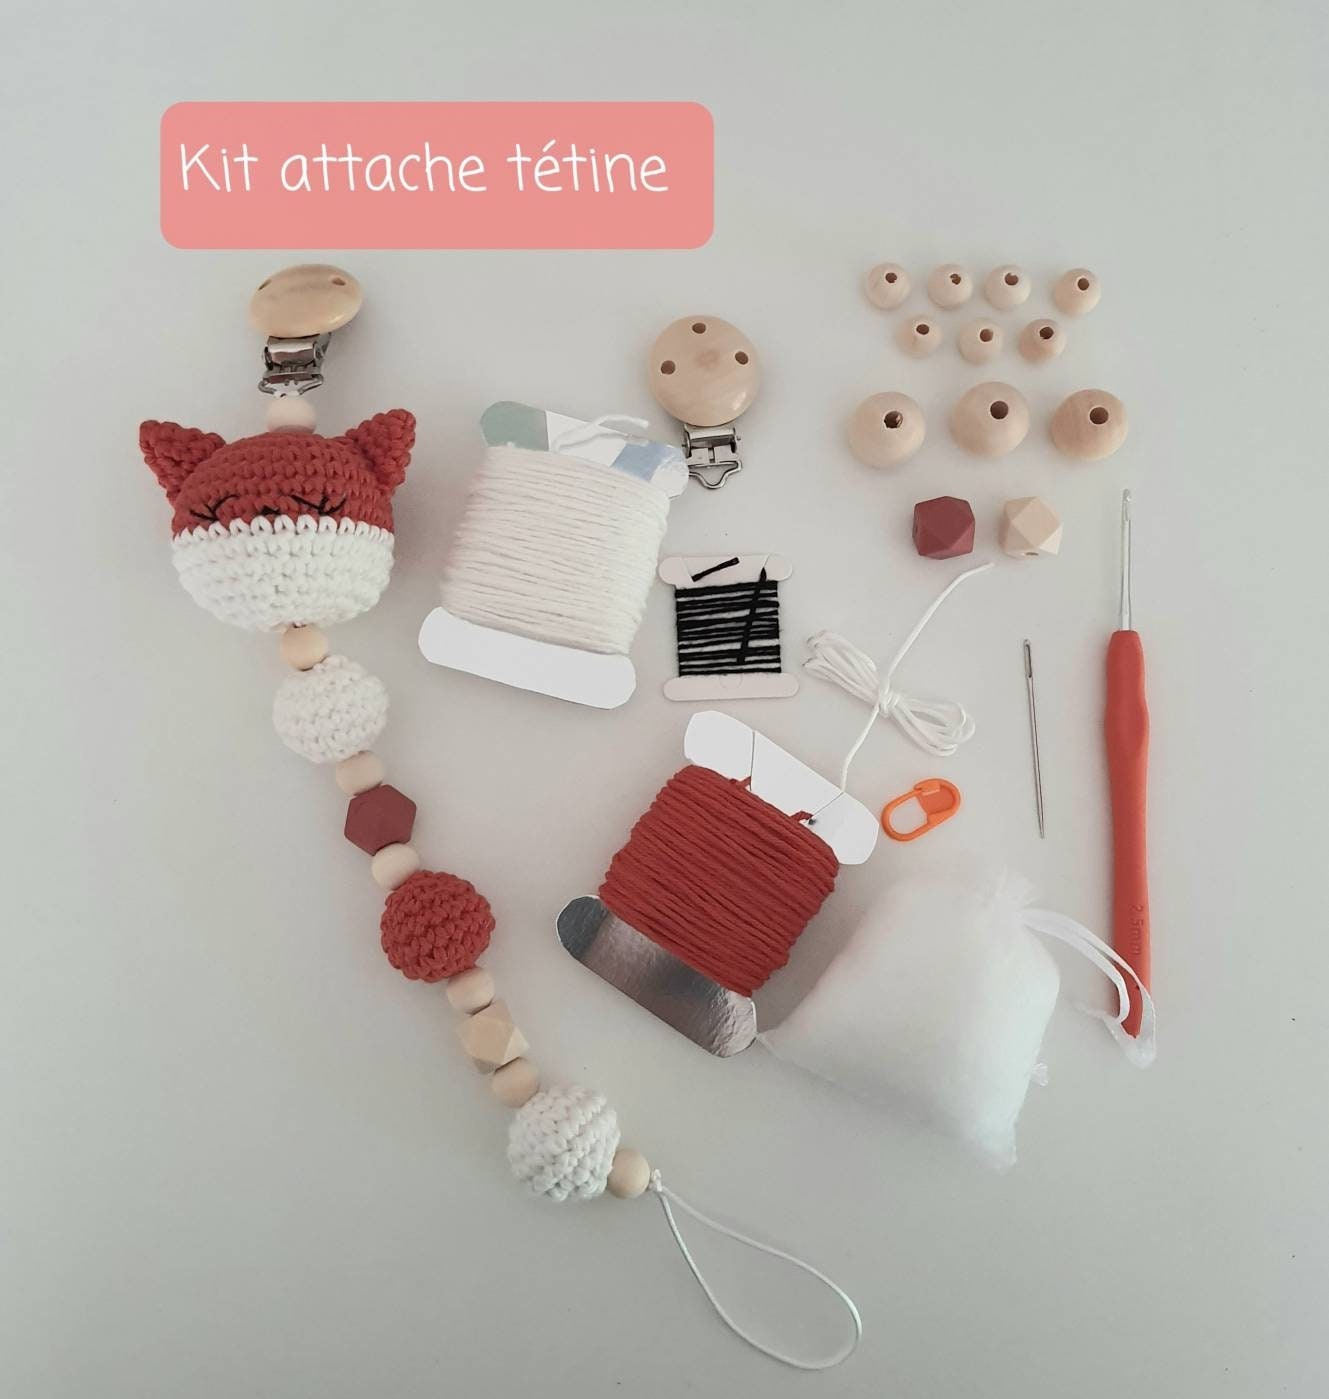 Kit attaché tétine -  France